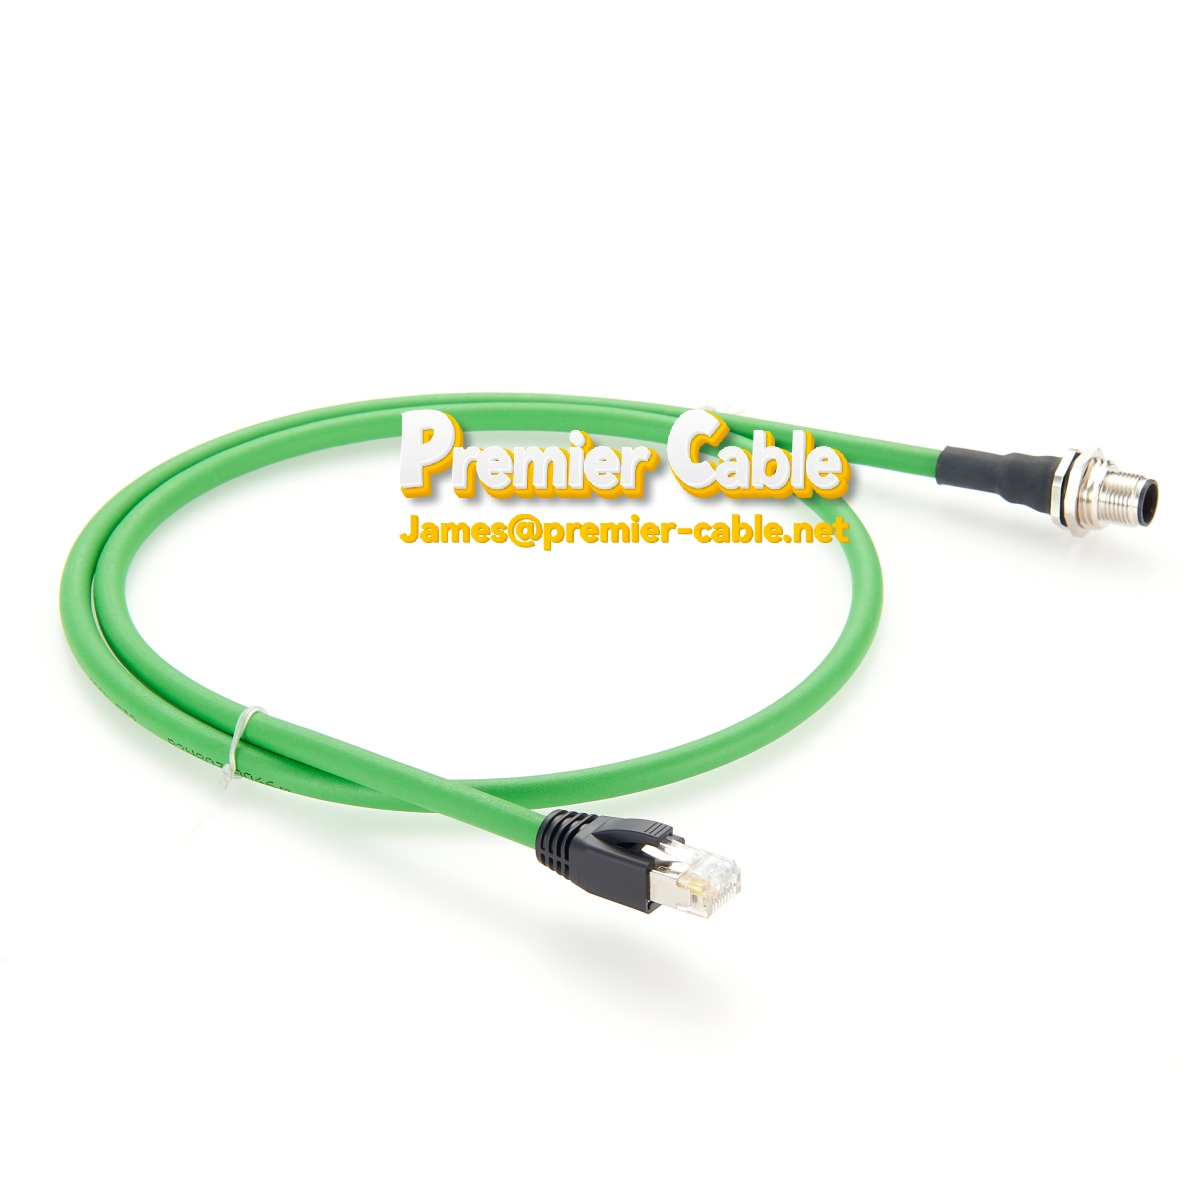 M12 Bulkhead Connector D-Code to RJ45 Profinet Panel Mount Cable